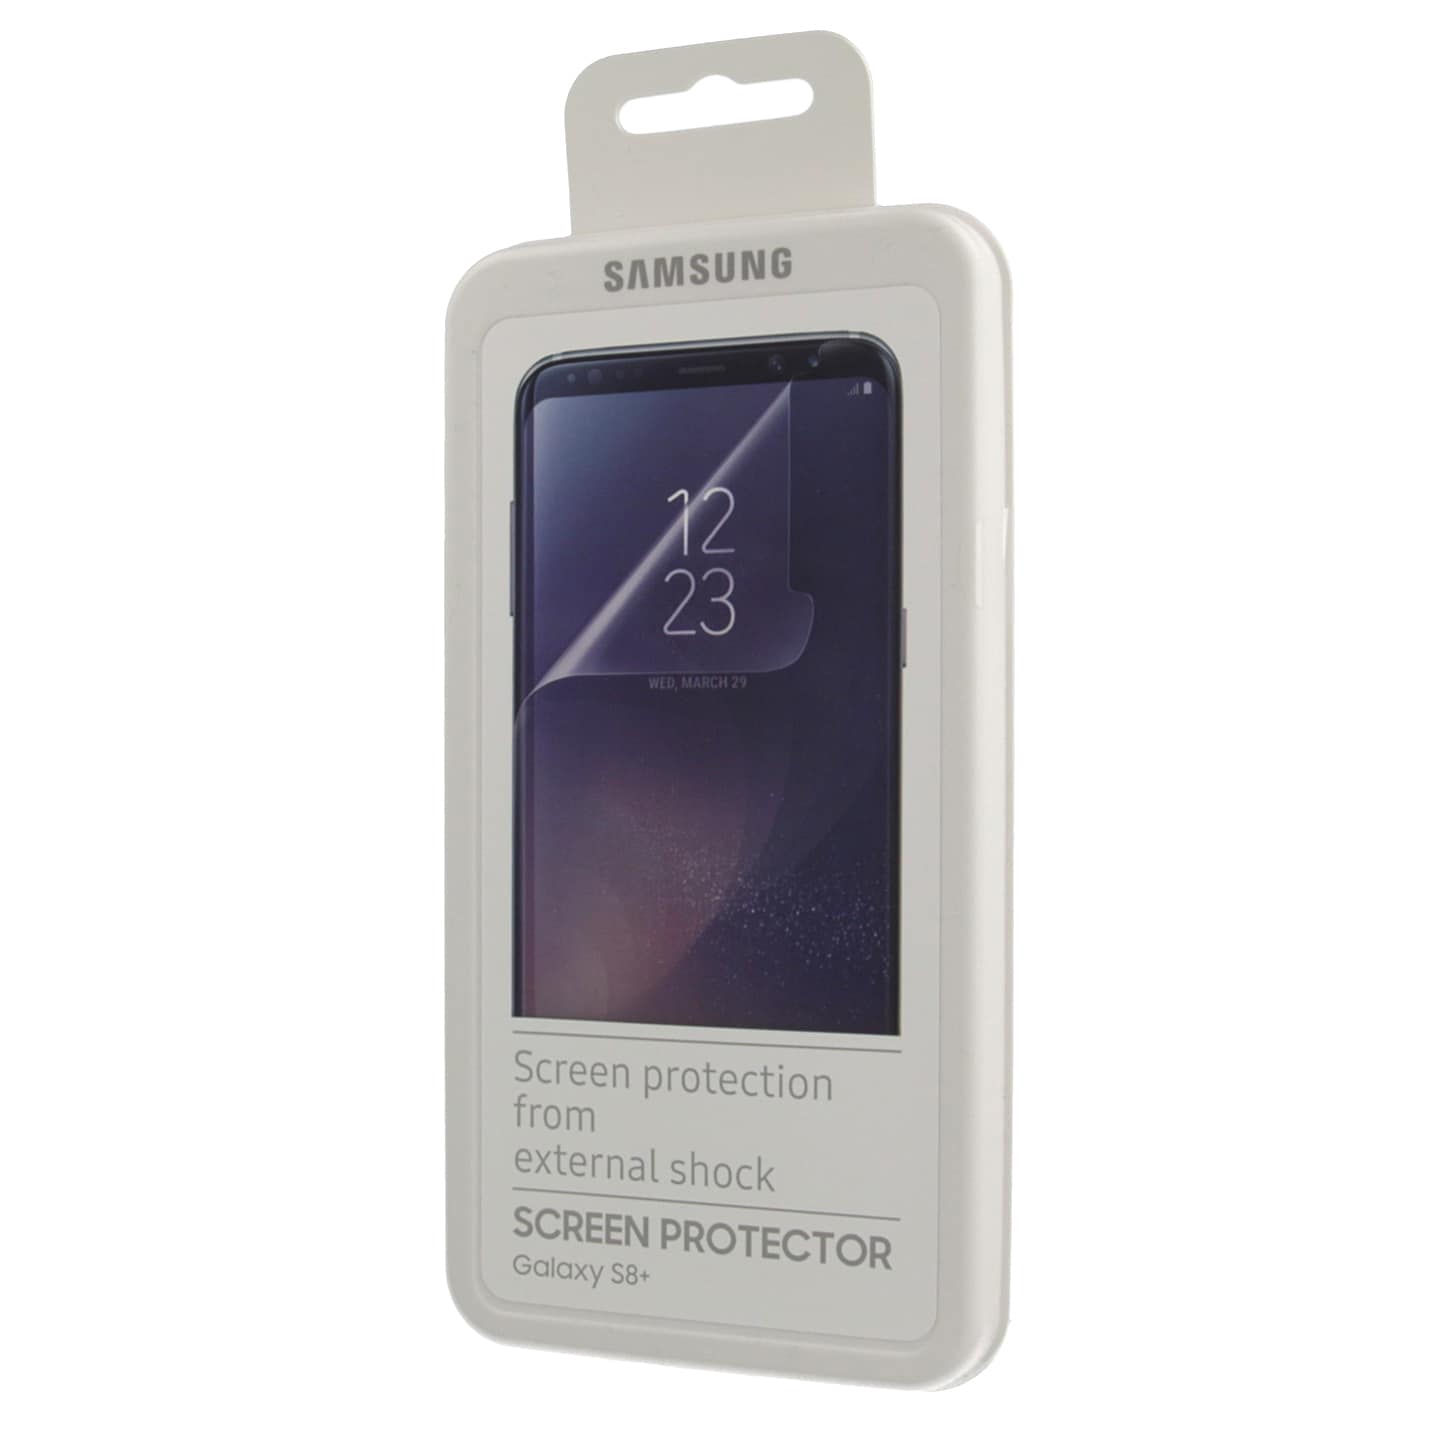 Samsung FG955 skjermbeskyttelse til Galaxy S8+